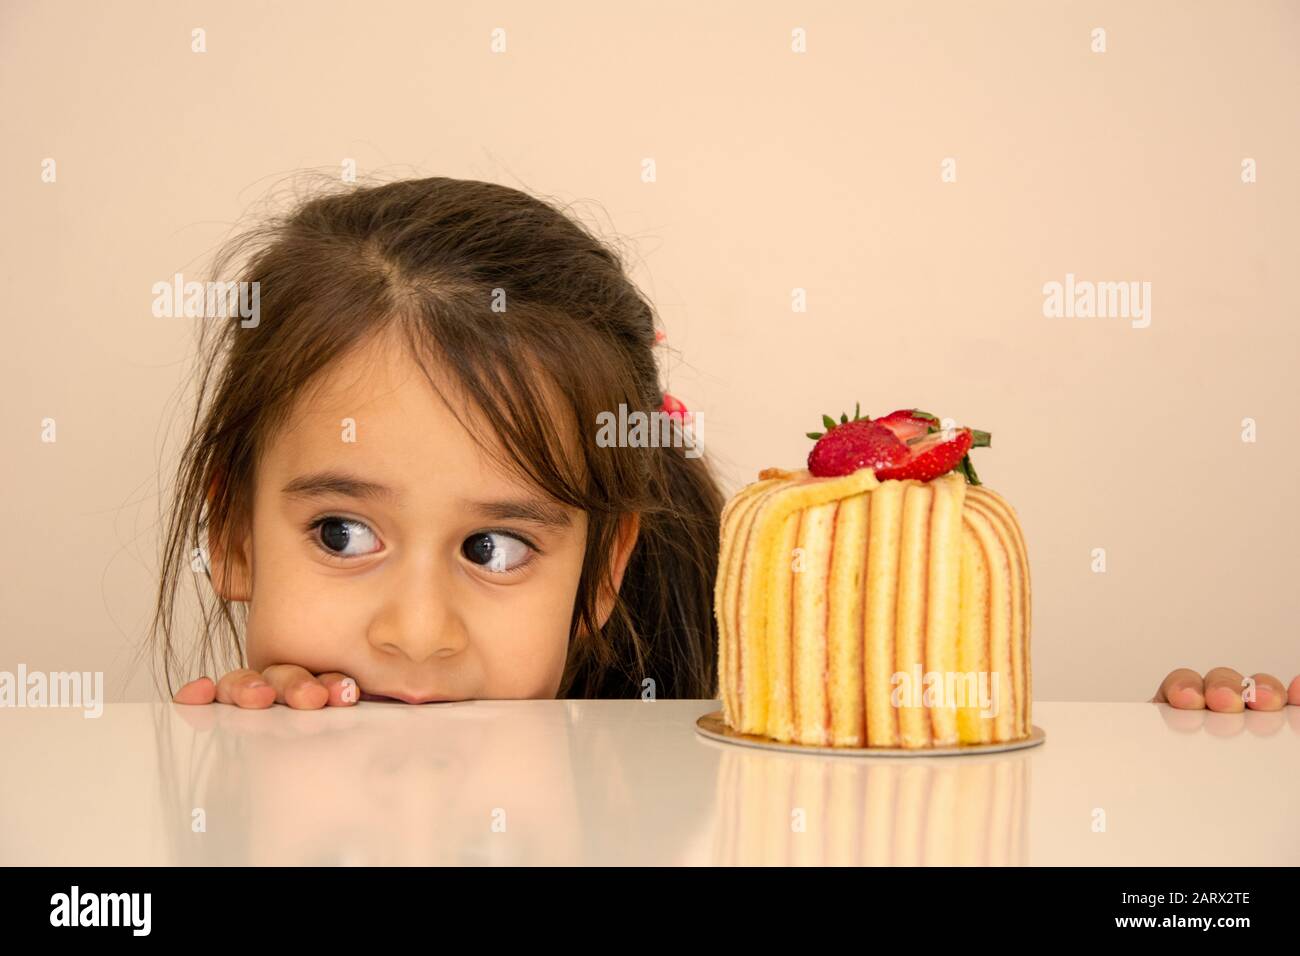 Bebé De 1 Año Celebrando El Primer Cumpleaños En La Habitación. Comiendo  Pastel. Decoración De Cumpleaños Infancia. Fotos, retratos, imágenes y  fotografía de archivo libres de derecho. Image 89709928